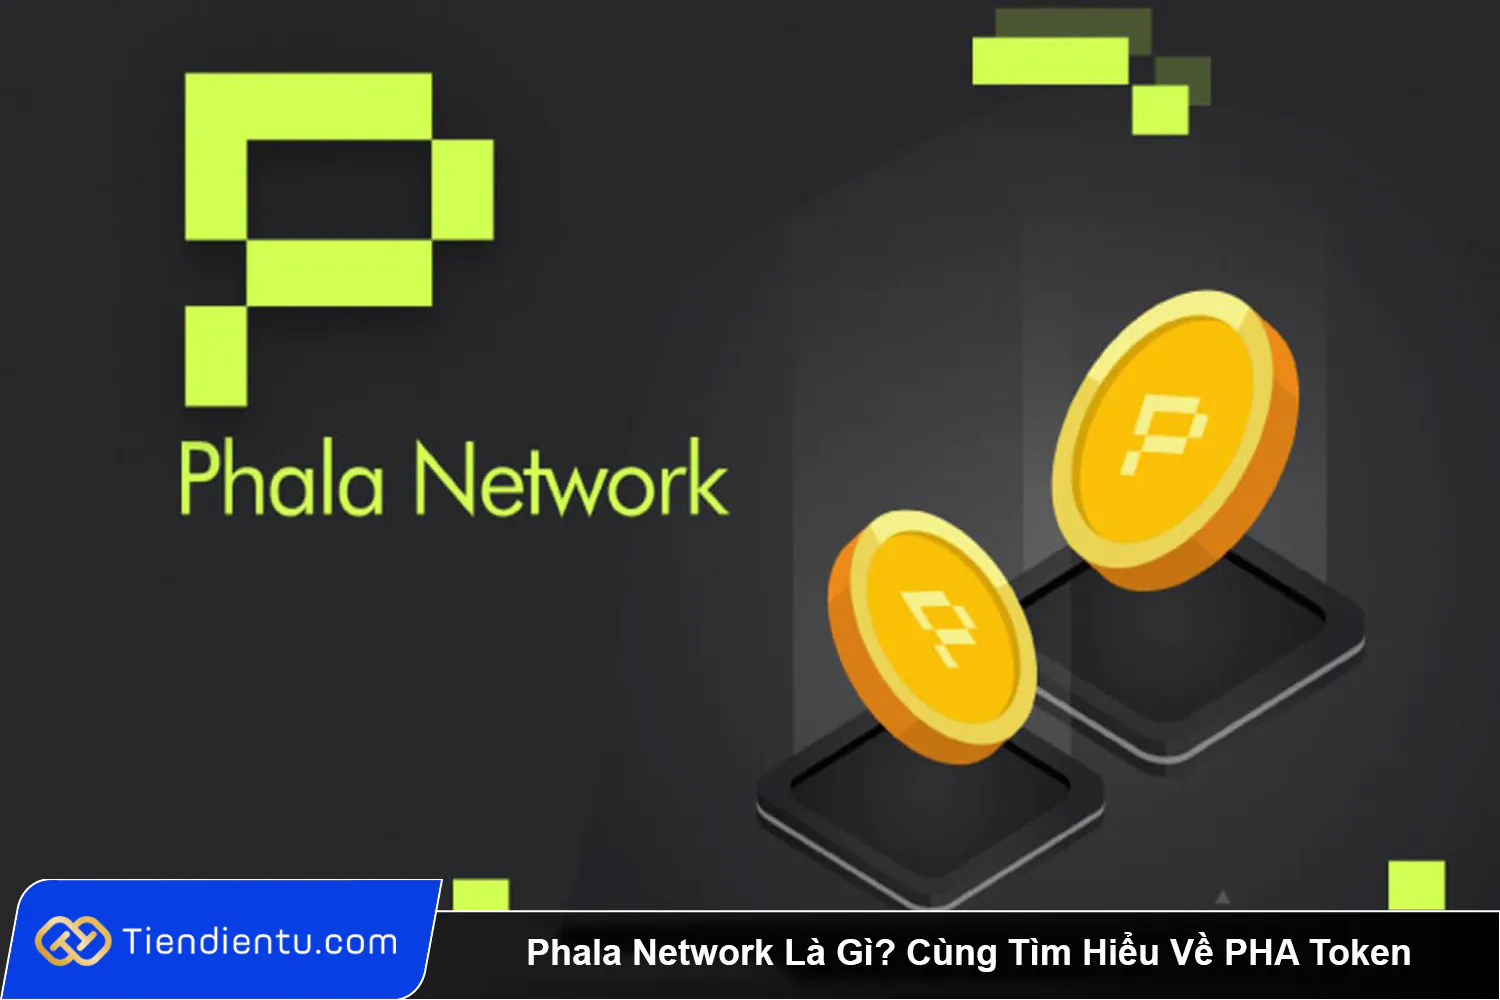 Phala Network La Gi Cung Tim Hieu Ve PHA Token